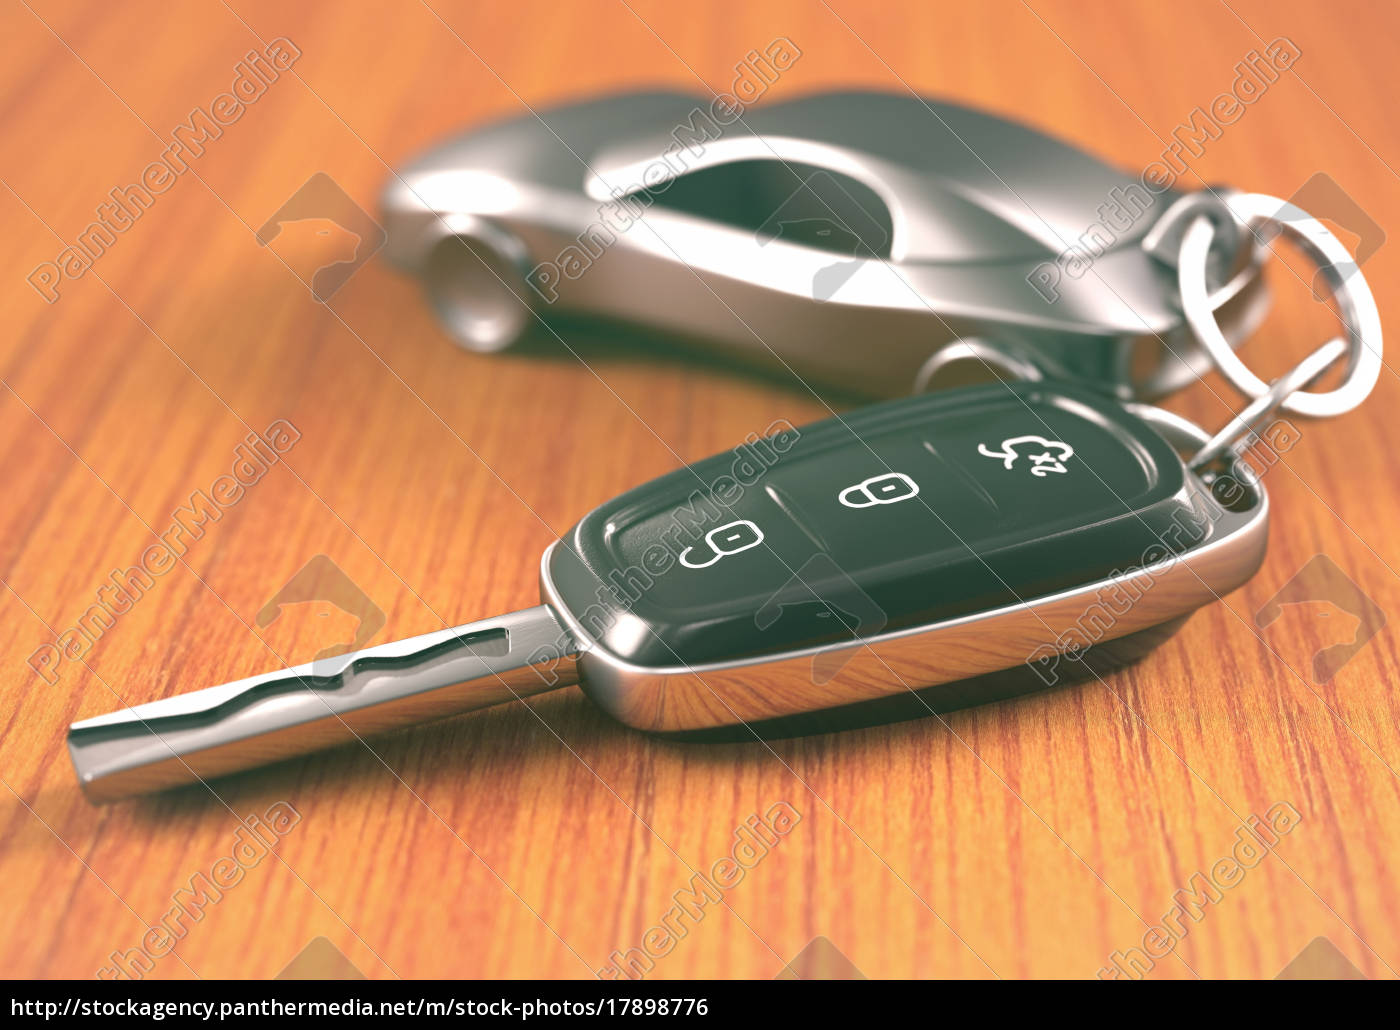 MYDH Autoschlüssel Schlüssel Hülle Schlüsselanhänger Wearable Auto